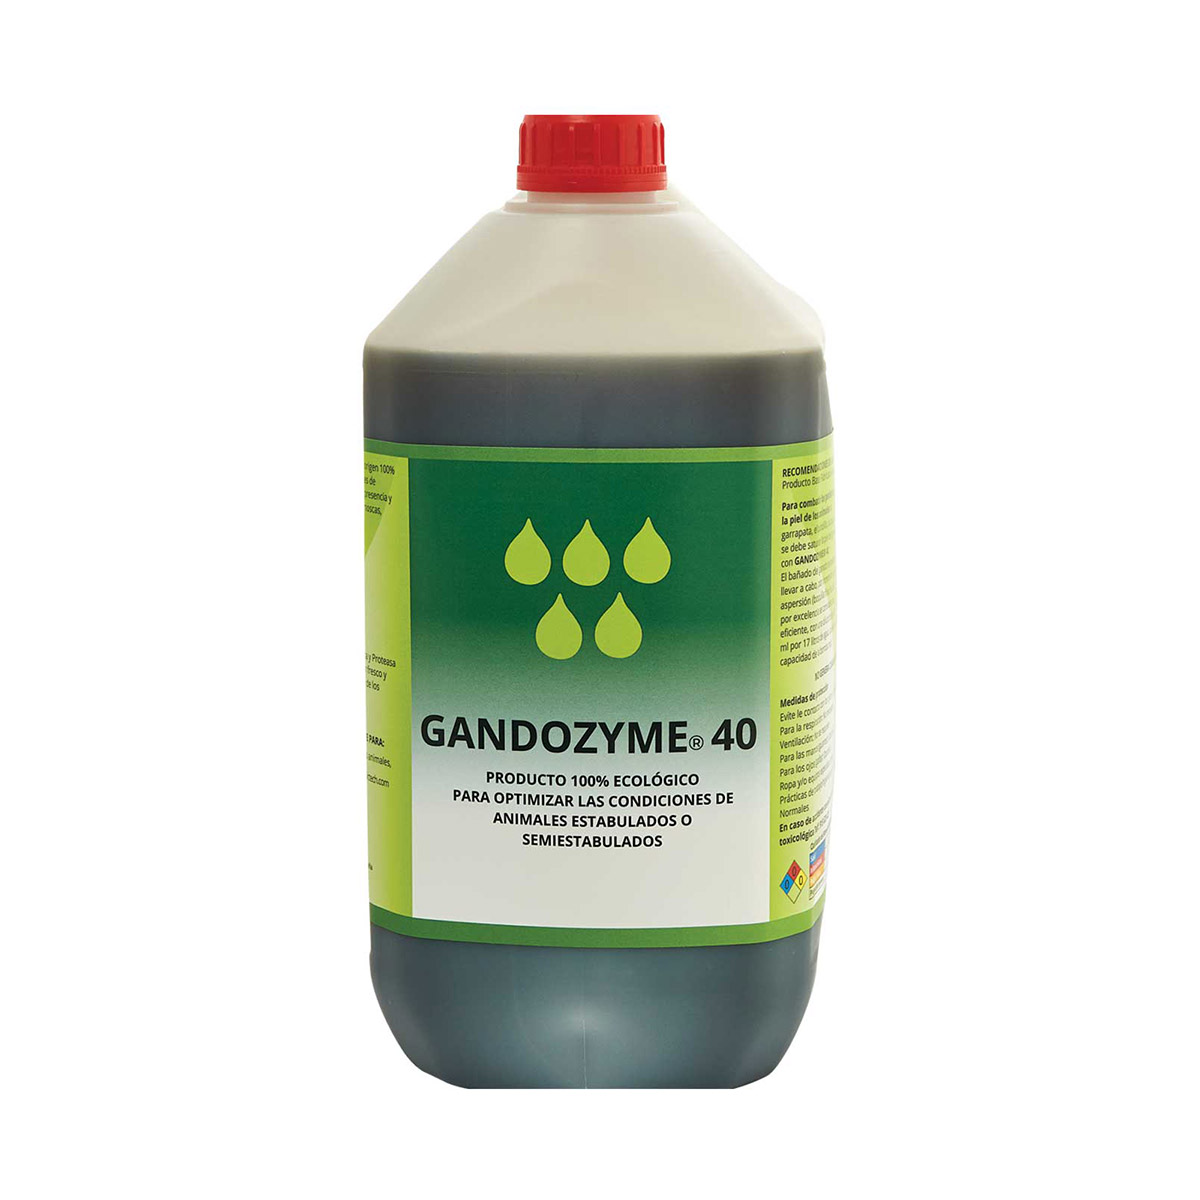 GANDOZYME® 40